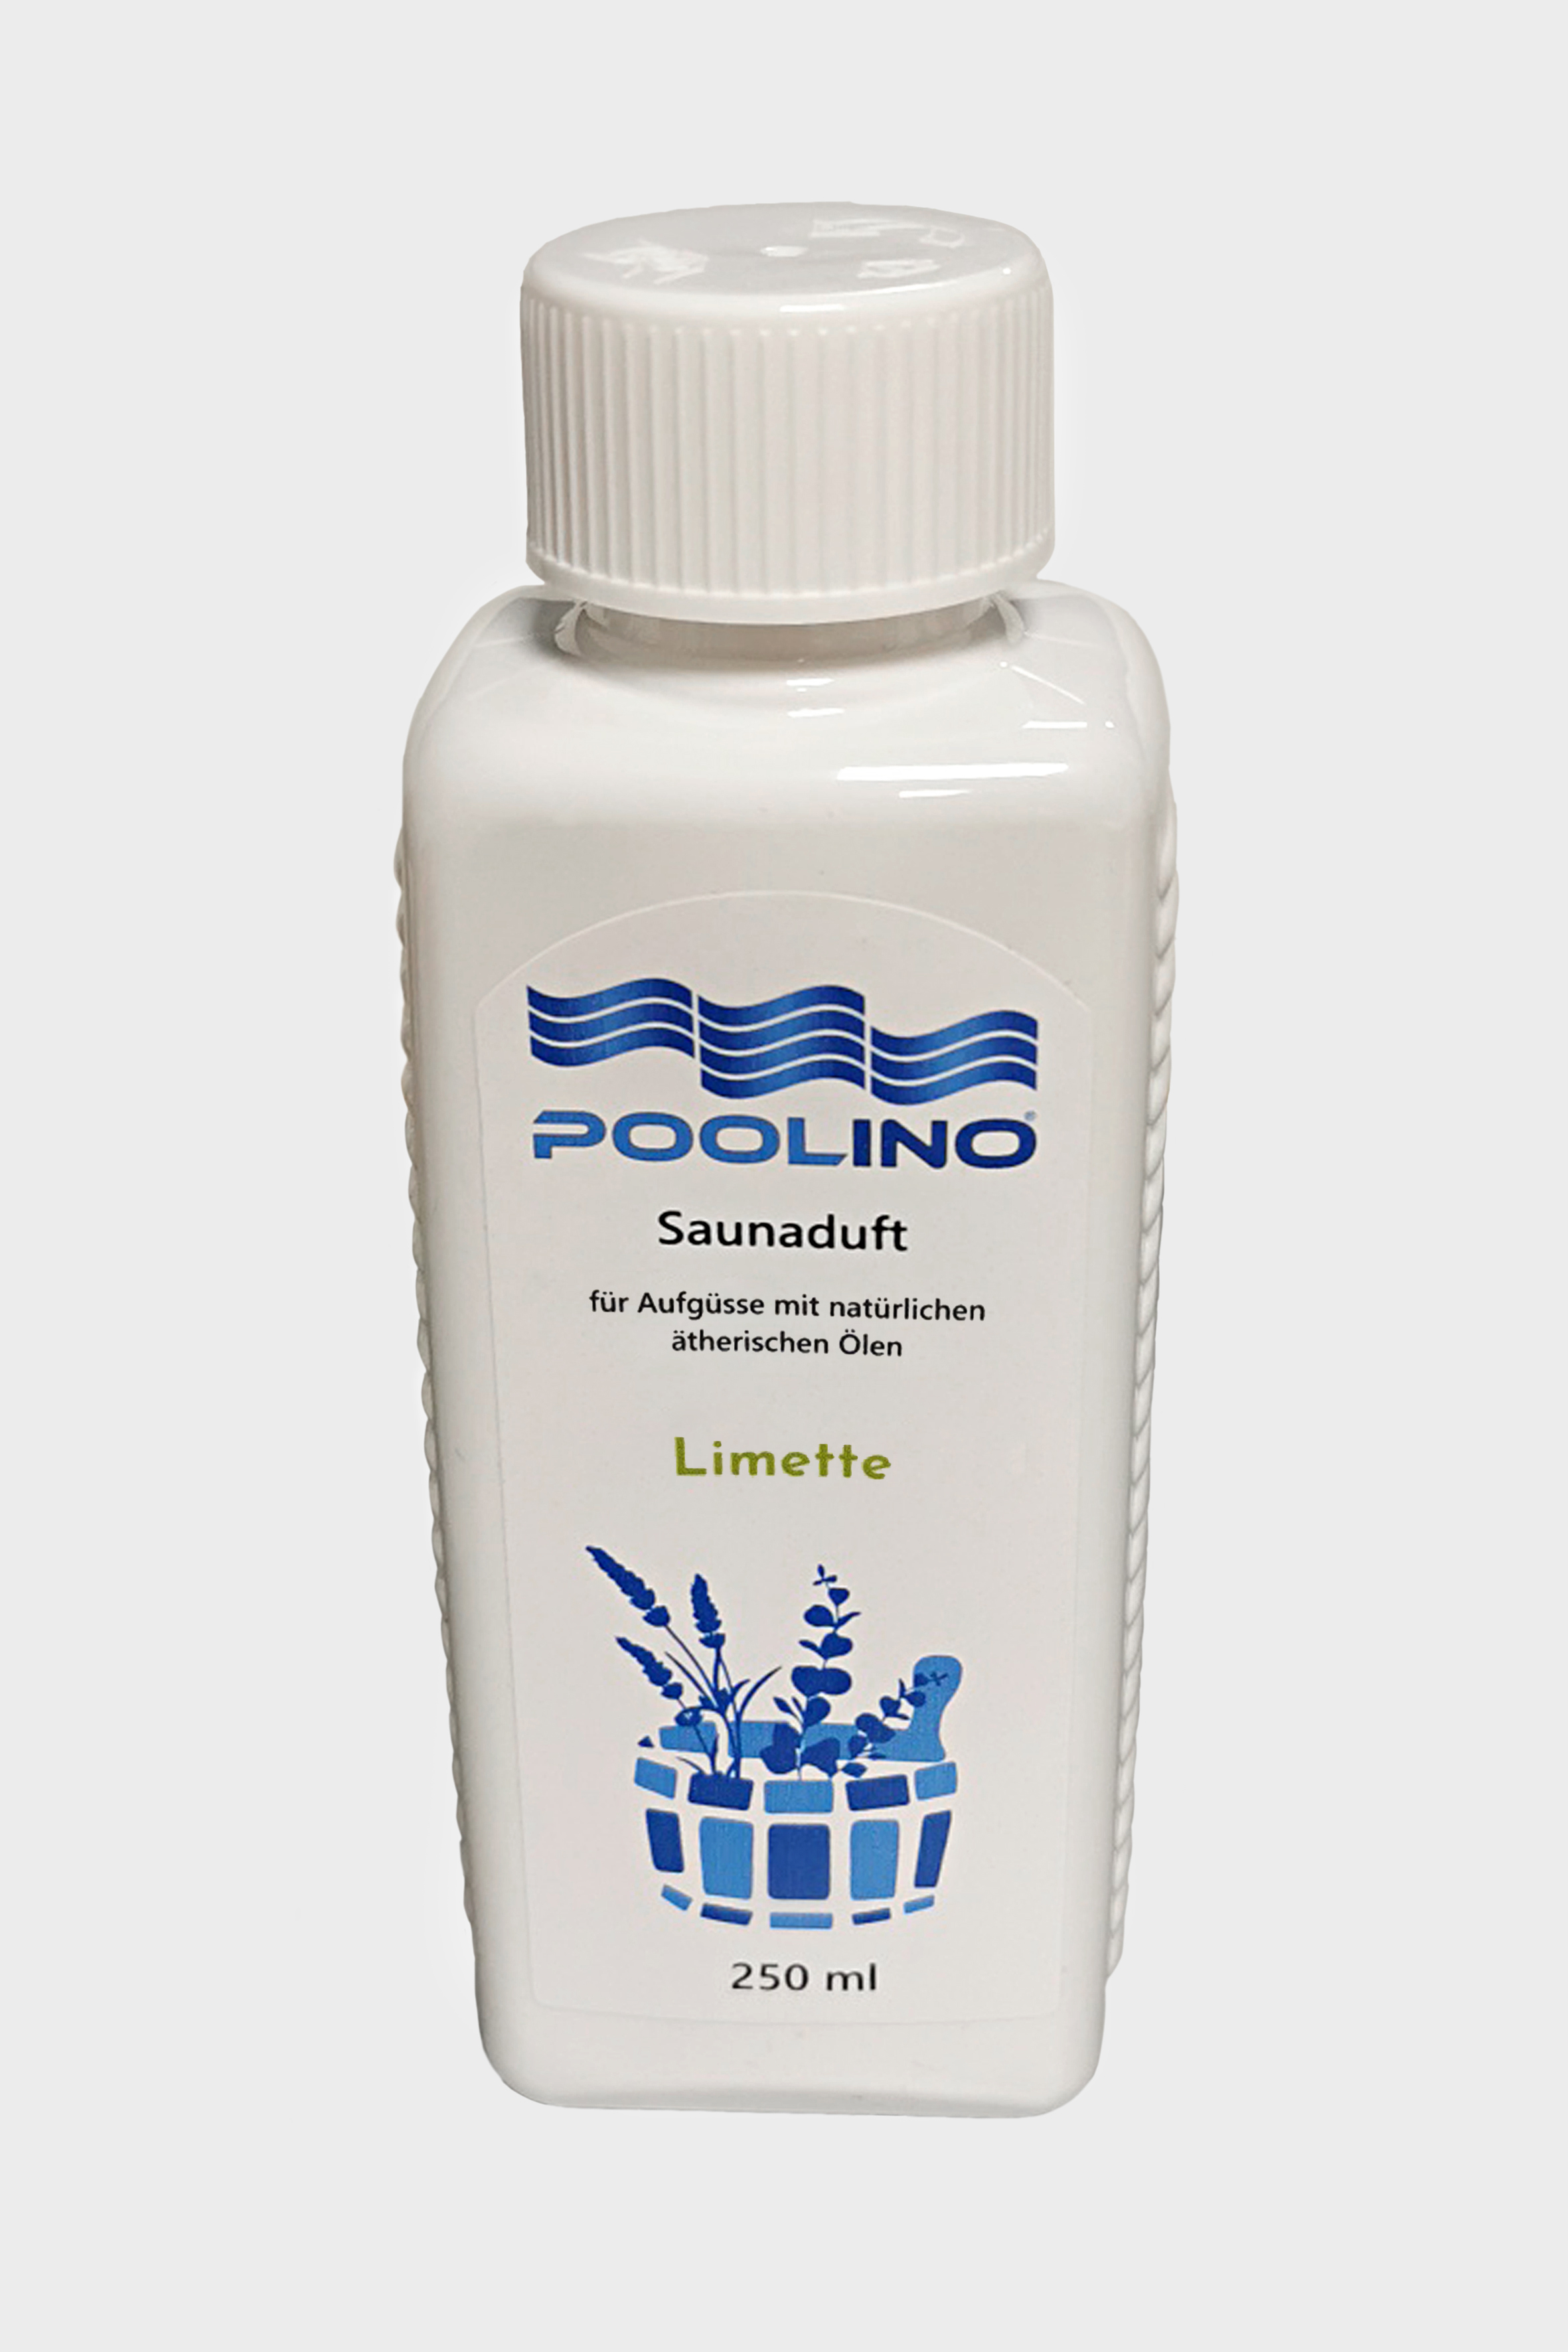 250 ml Poolino® Saunaduft Limette Aufgusskonzentrat